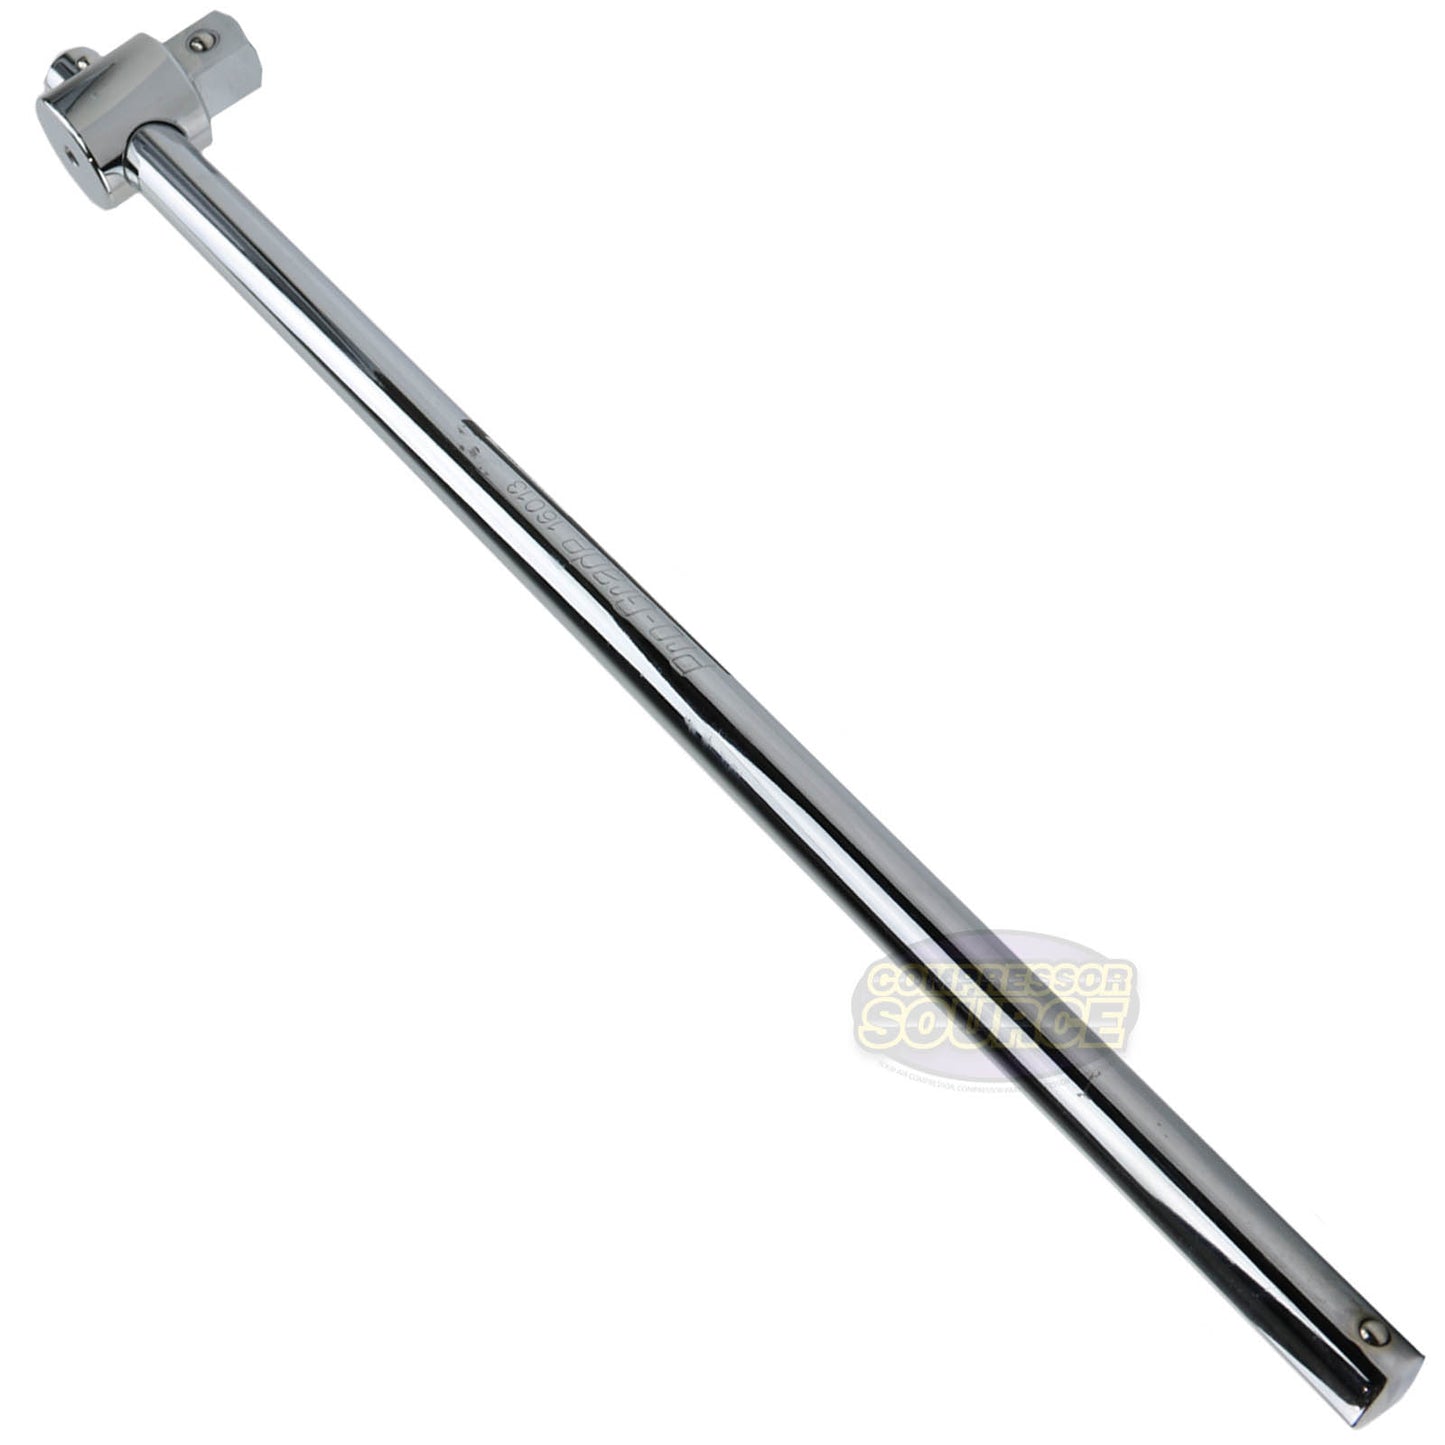 Pro Grade 20" 3/4 Drive Sliding T-Handle Socket Wrench Breaker Bar Heavy Duty